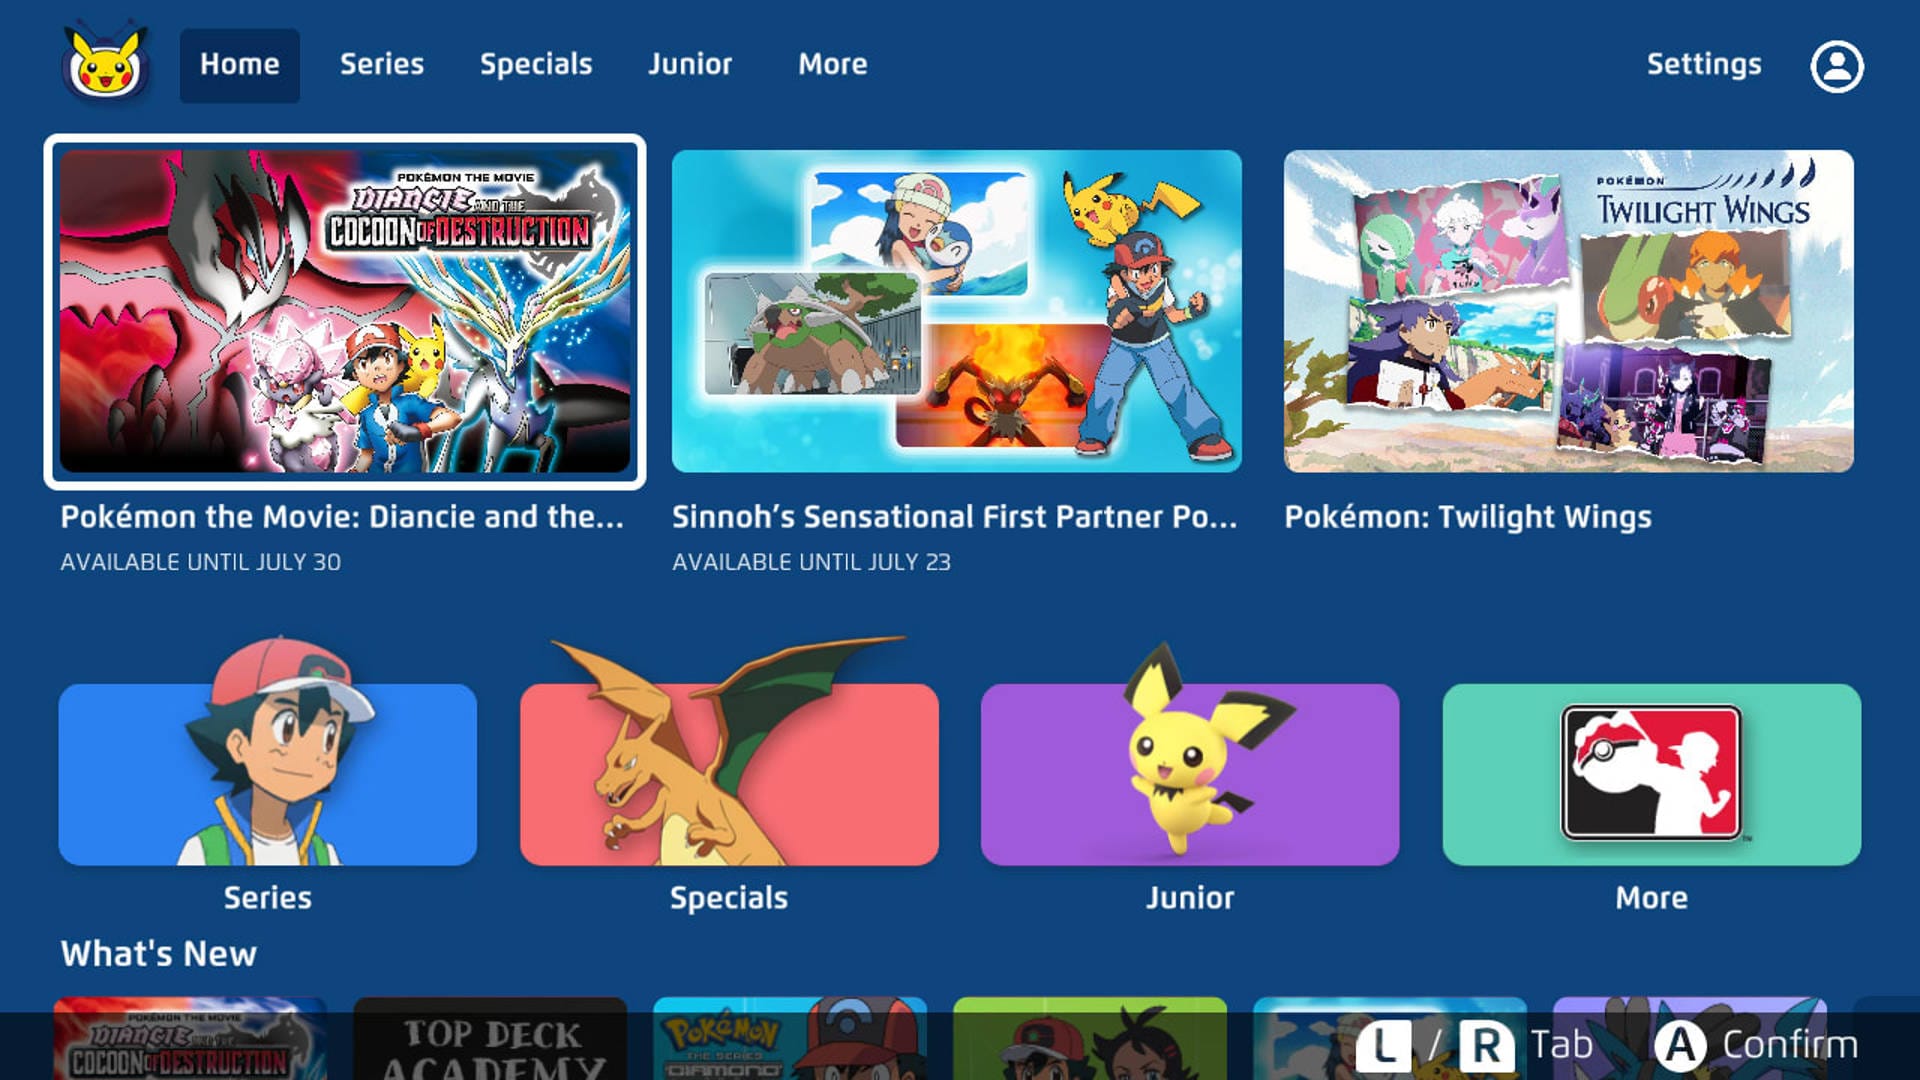 Pokémon streaming: Where to watch Pokémon anime online? Check